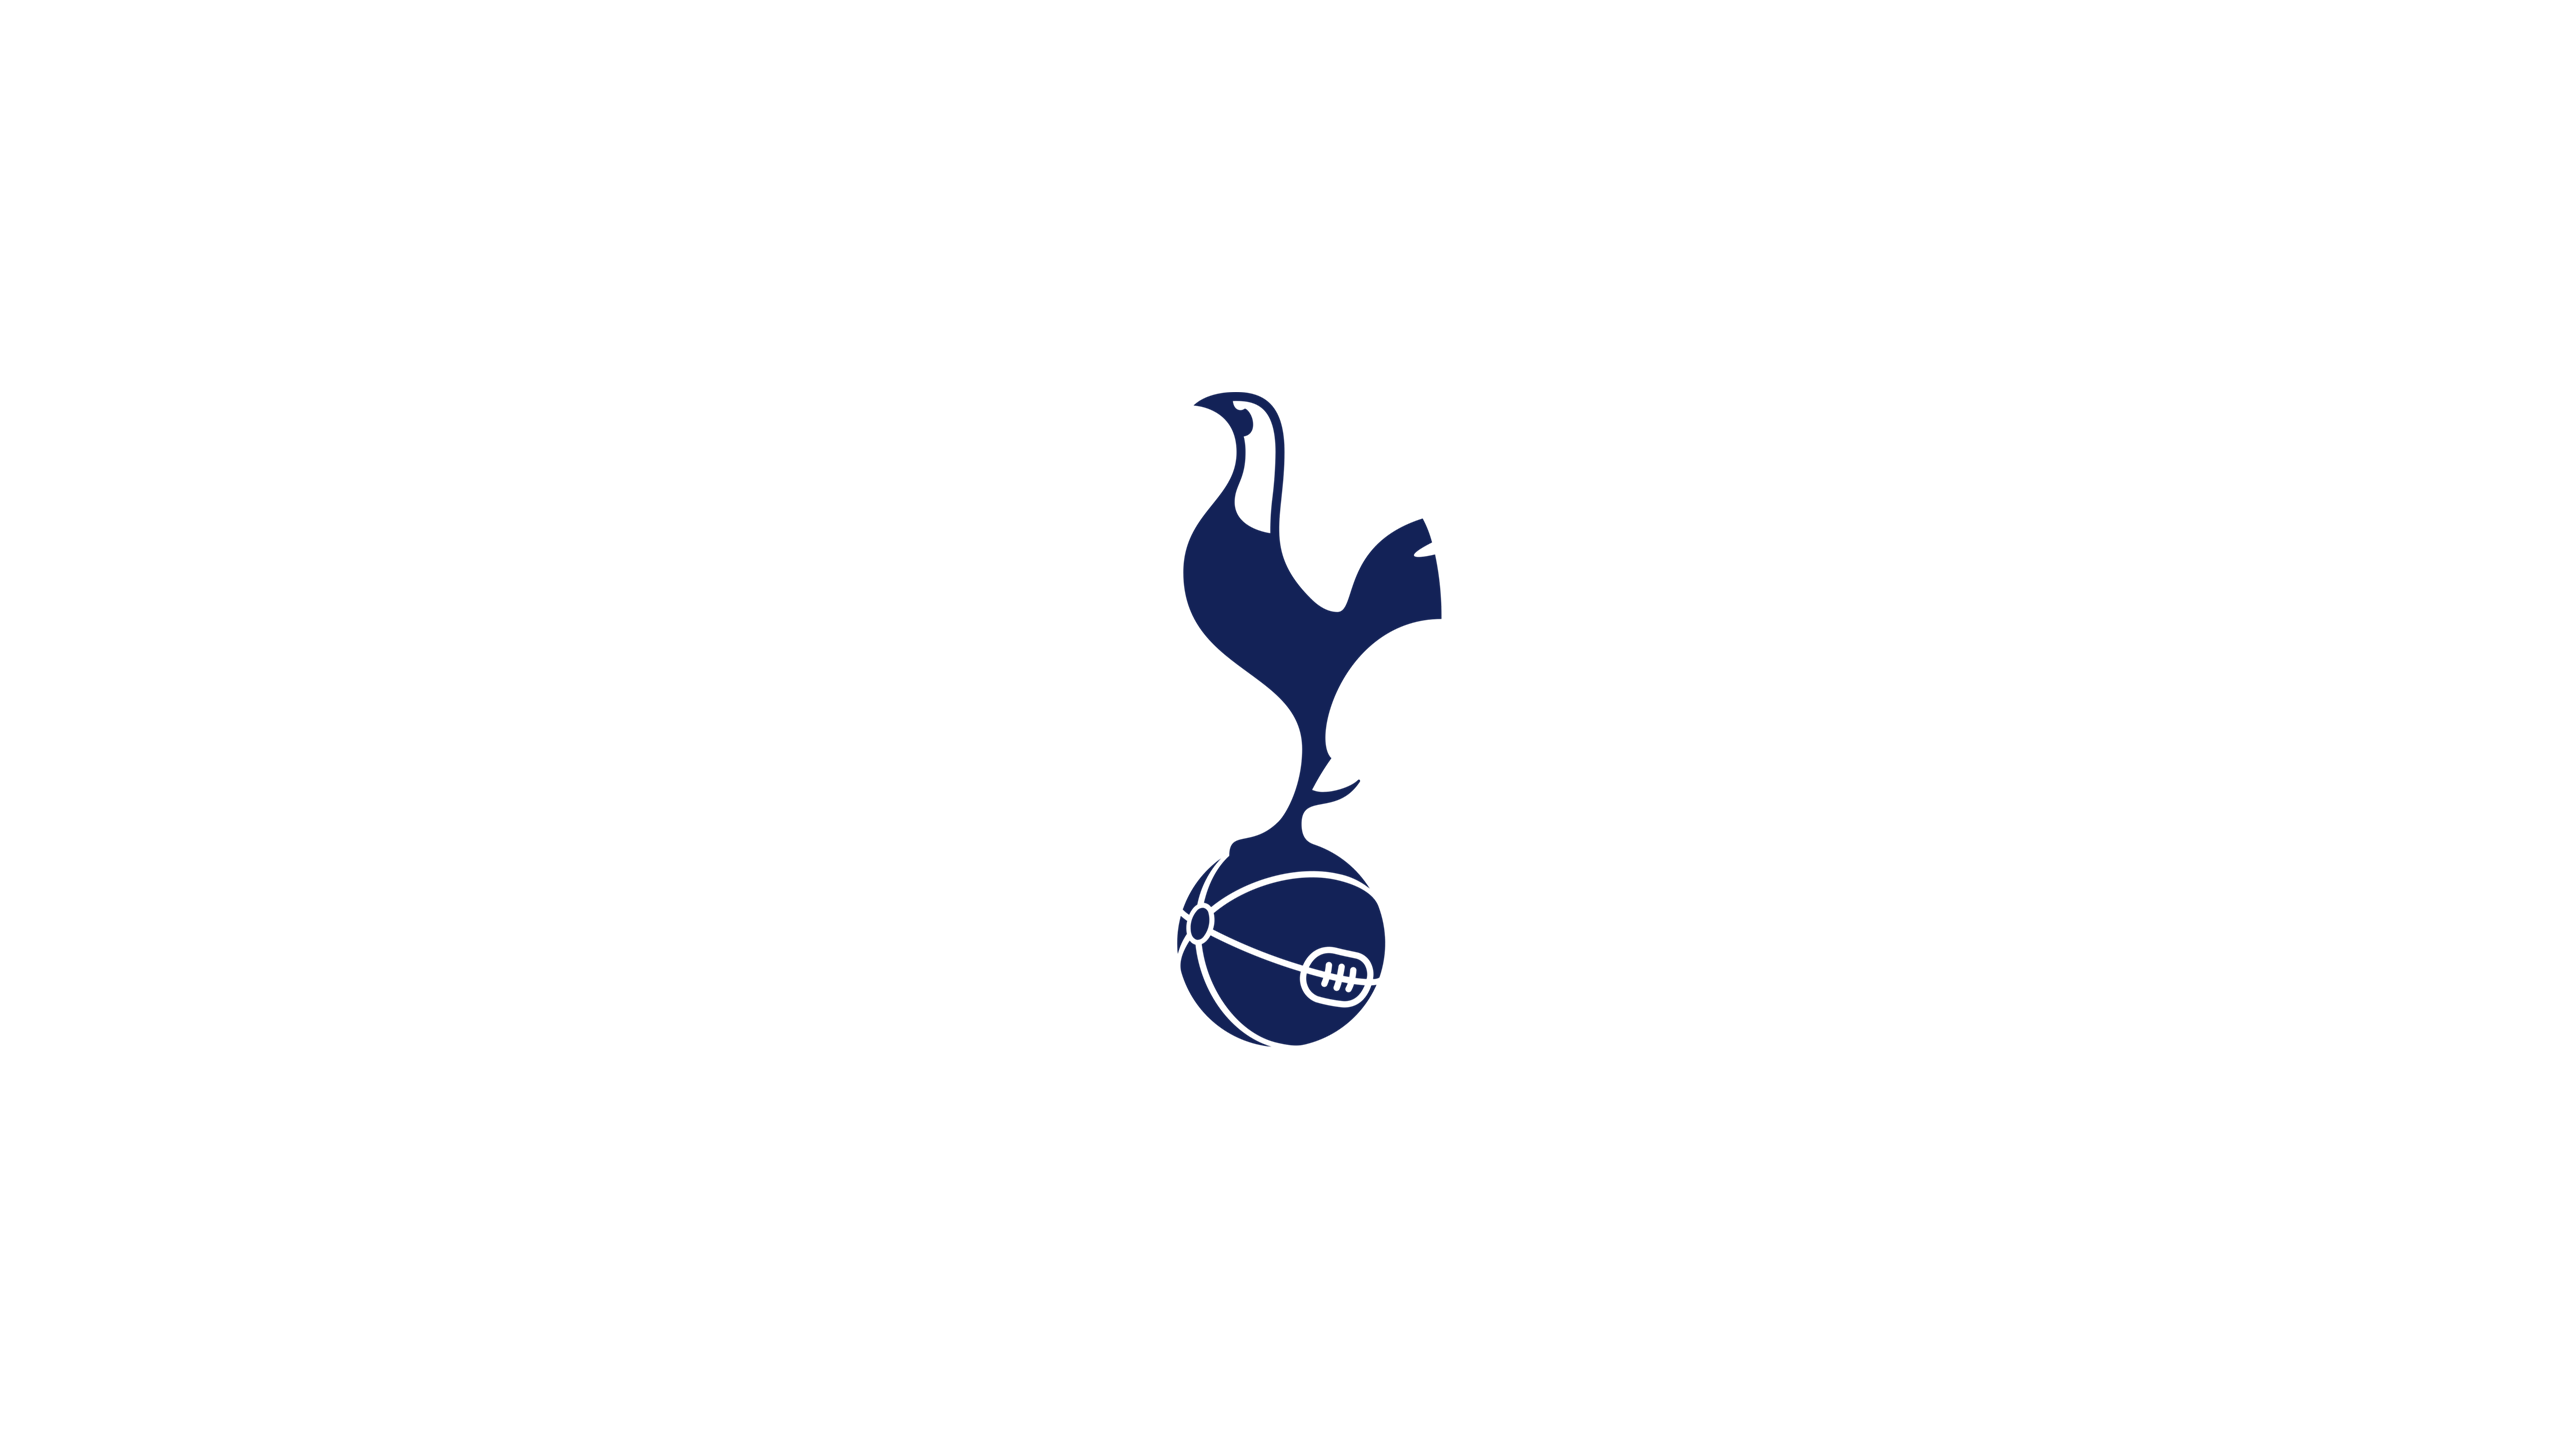 Tottenham Hotspur F.C. HD Wallpaper